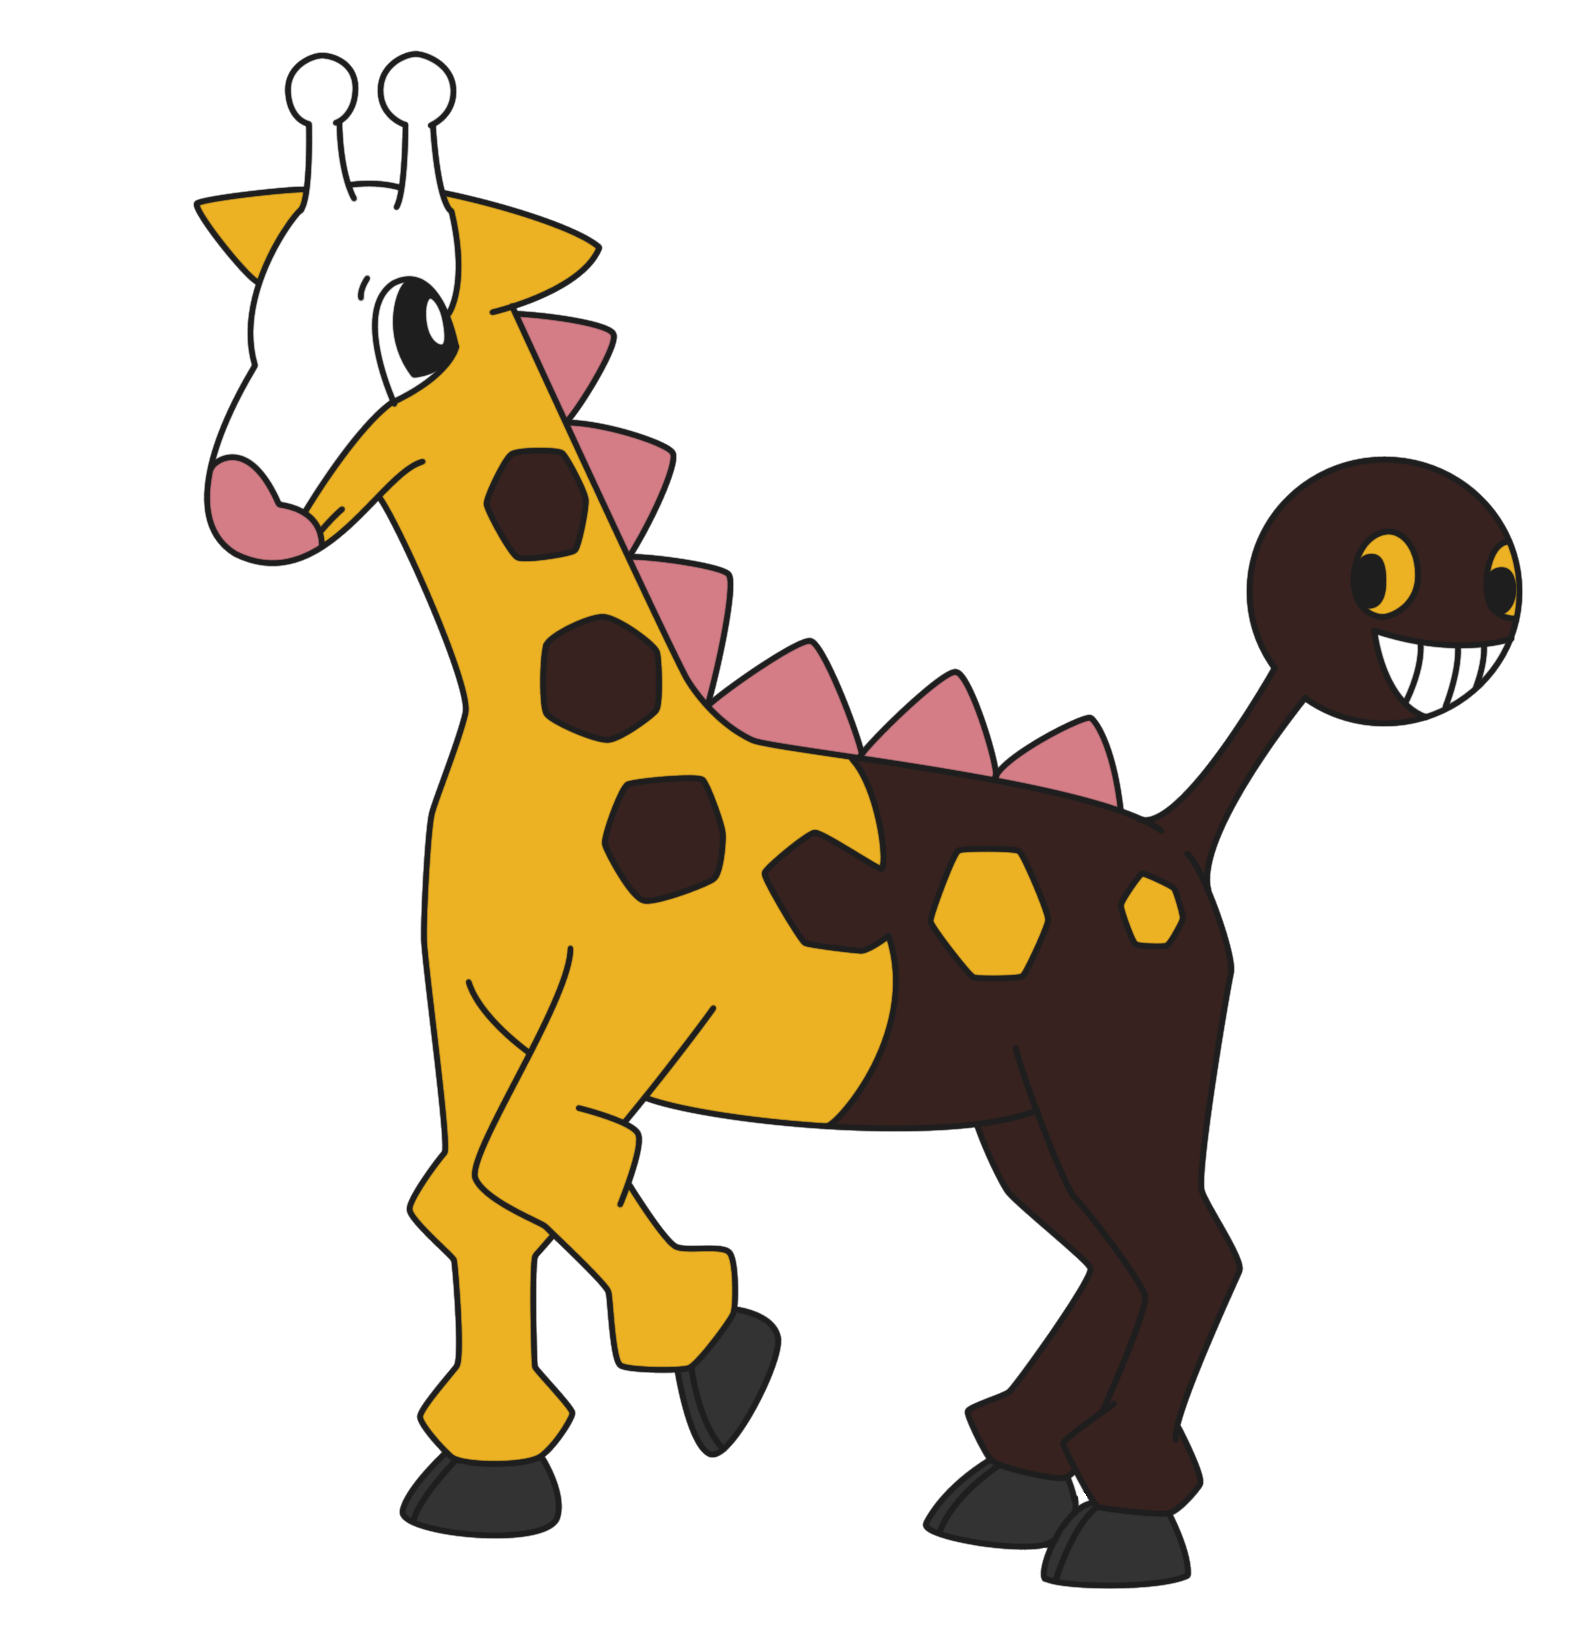 203: Girafarig. POKEMON. Pokémon, Anime and Manga